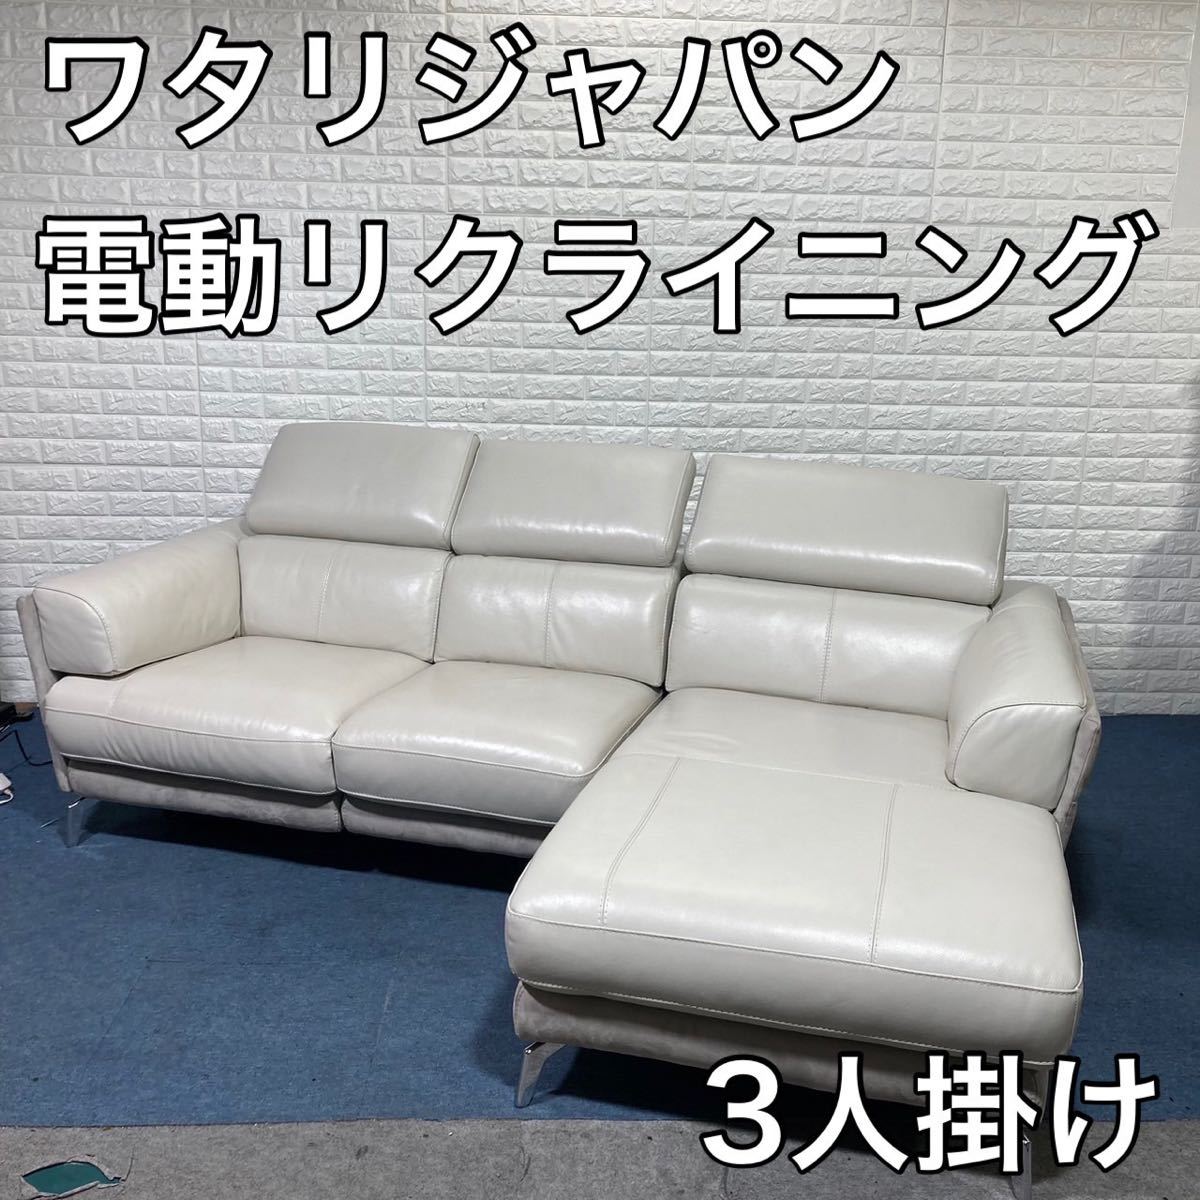 ワタリジャパン 電動リクライニング ソファ カウチ 3人掛け レザー C609